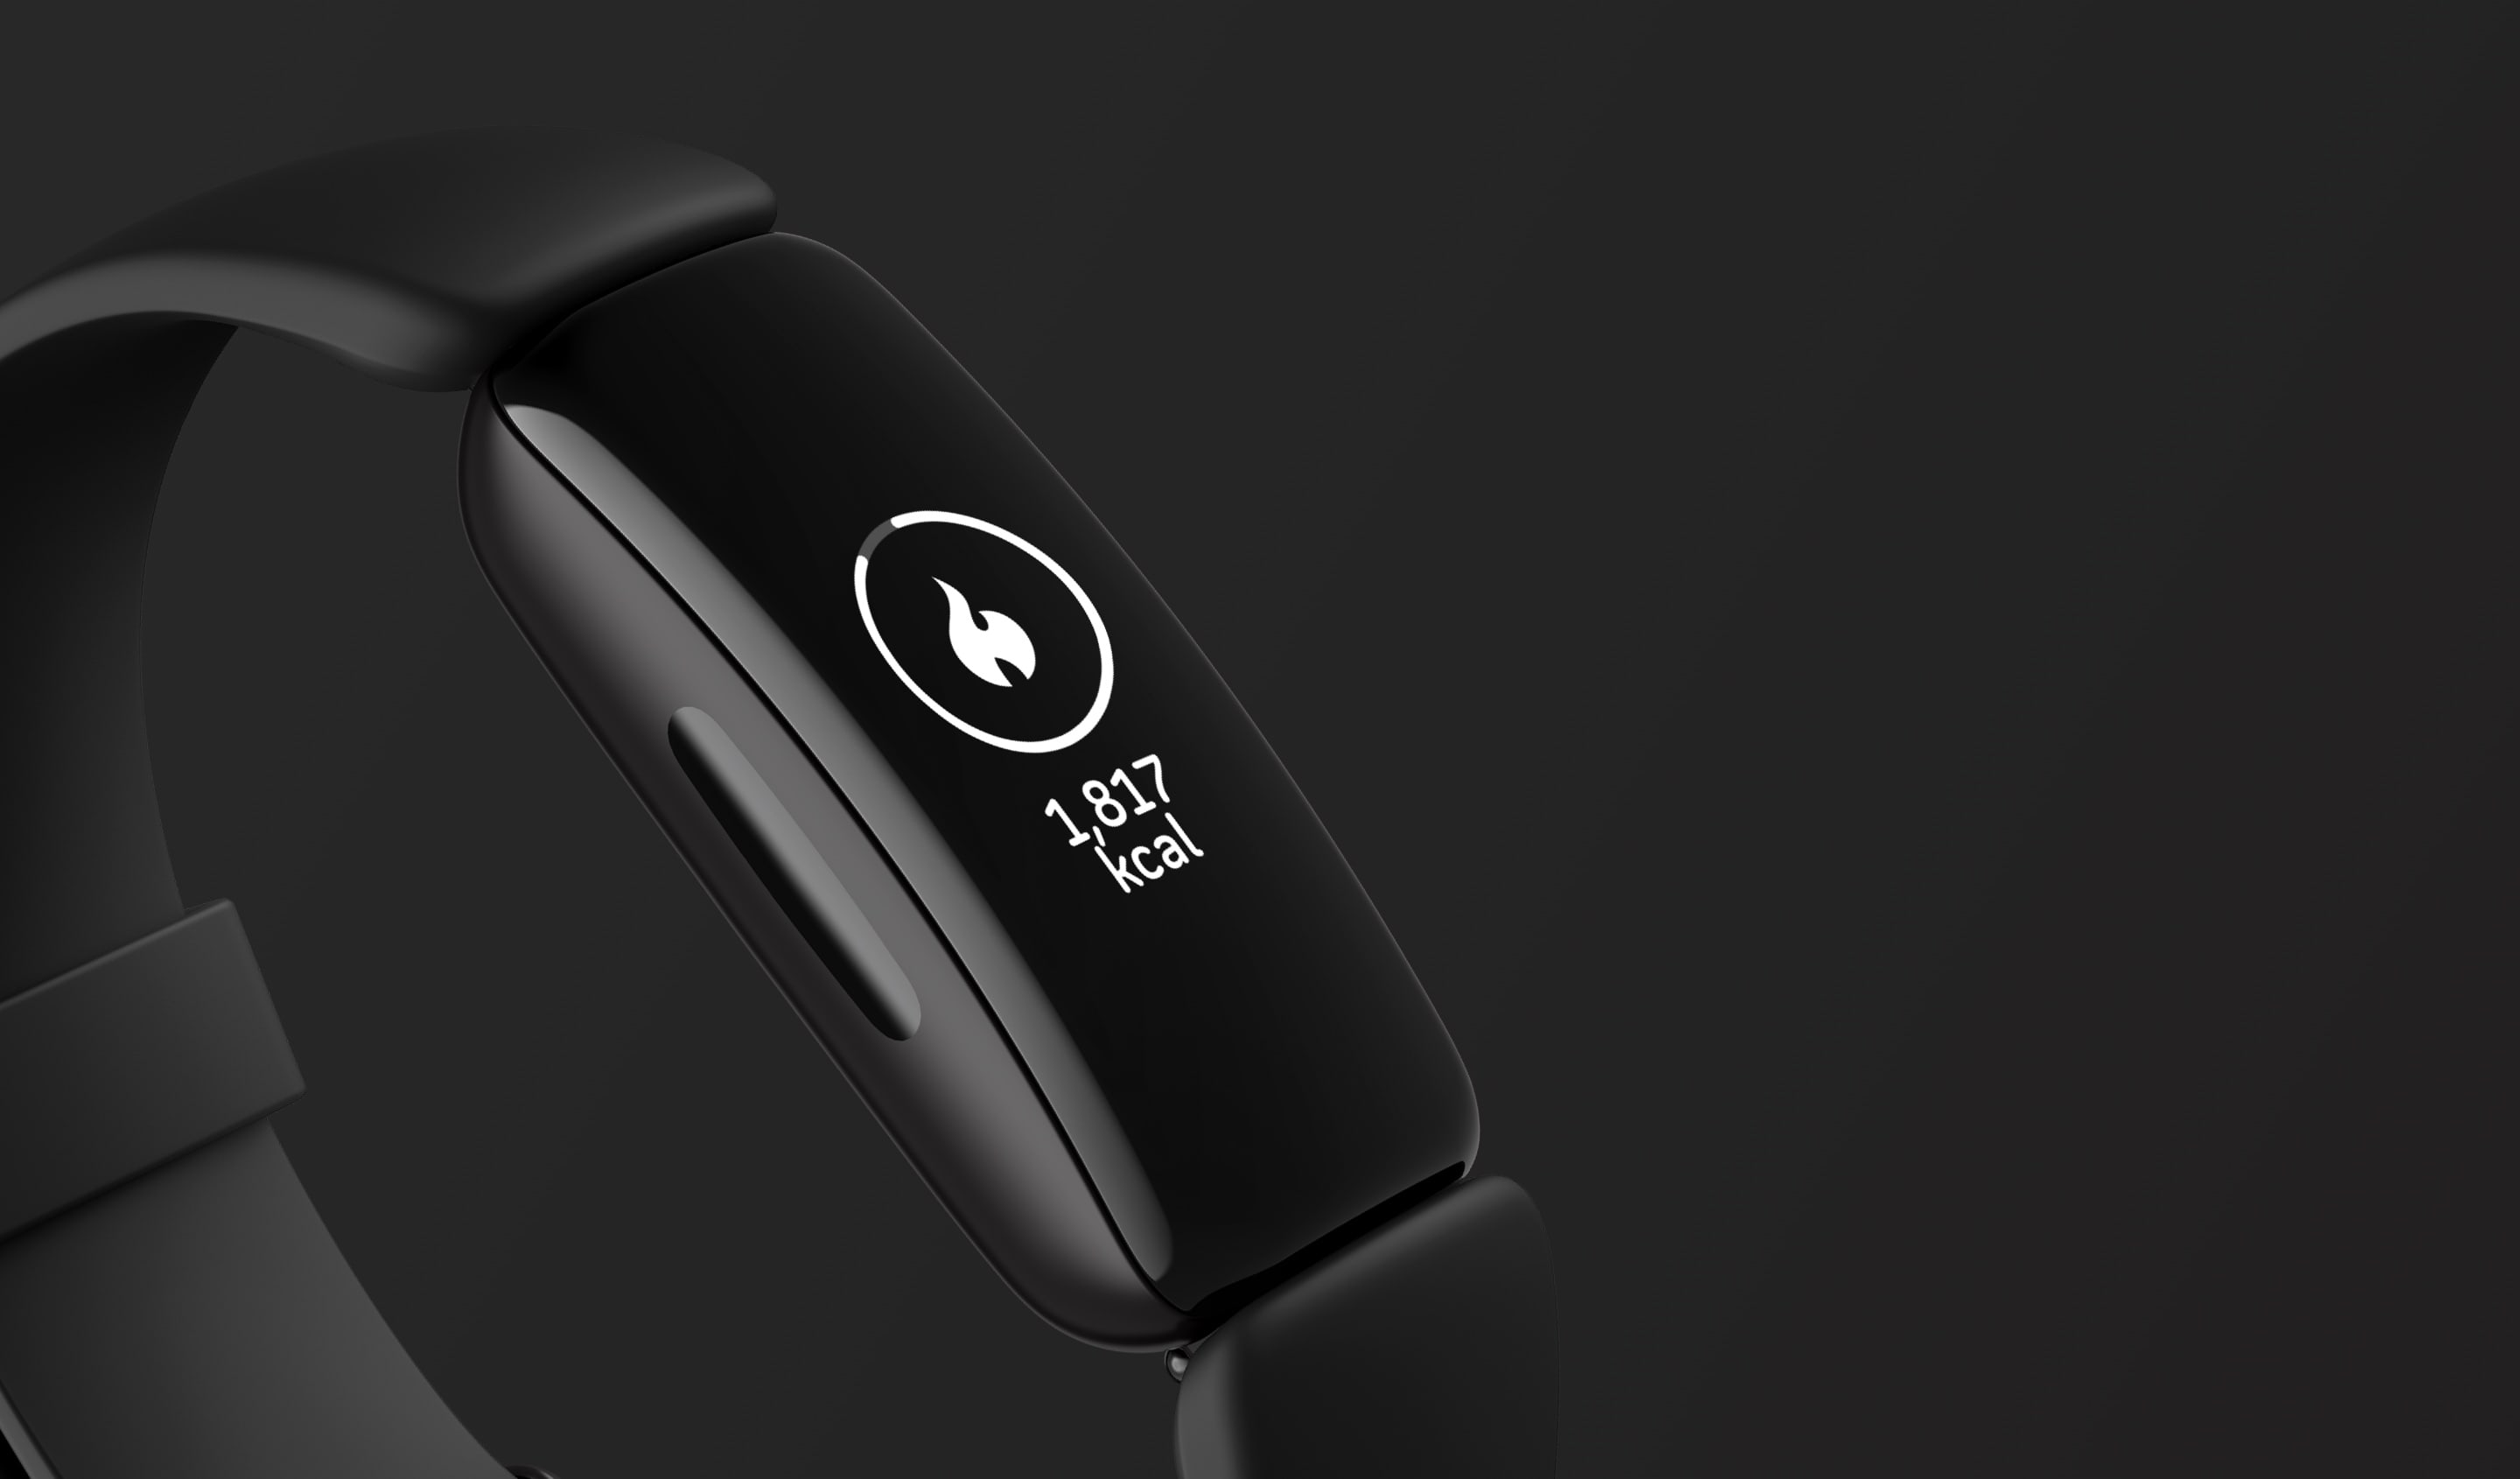 心拍数機能を備えたフィットネストラッカー | Fitbit Inspire 2 を購入